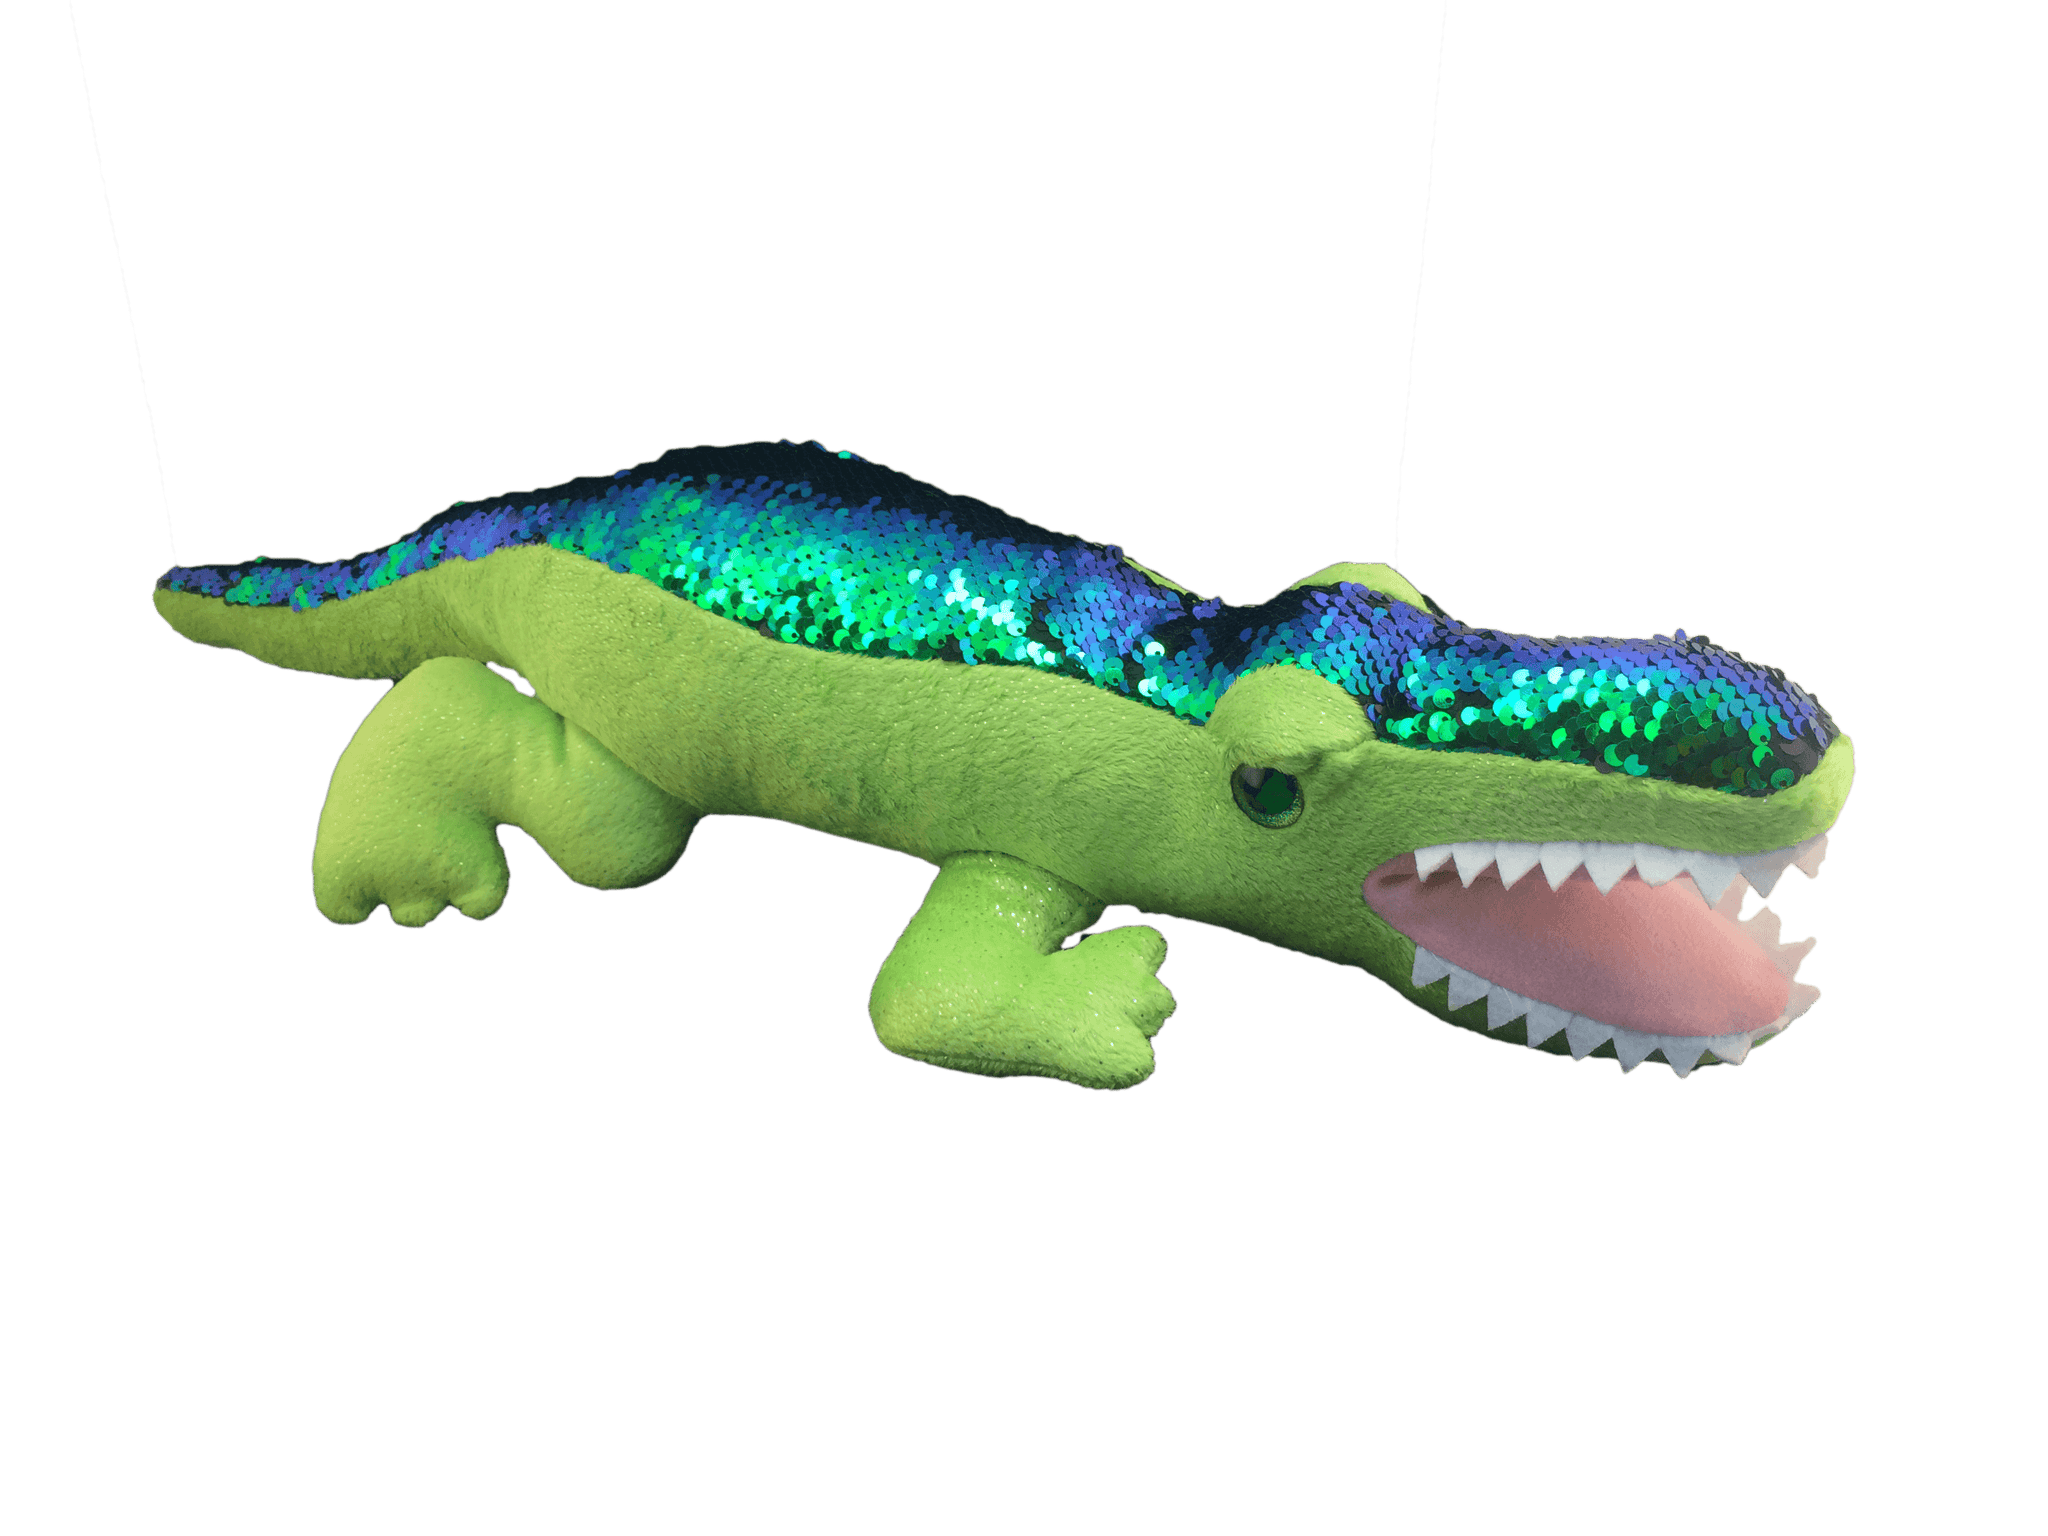 sequin plush alligator toy